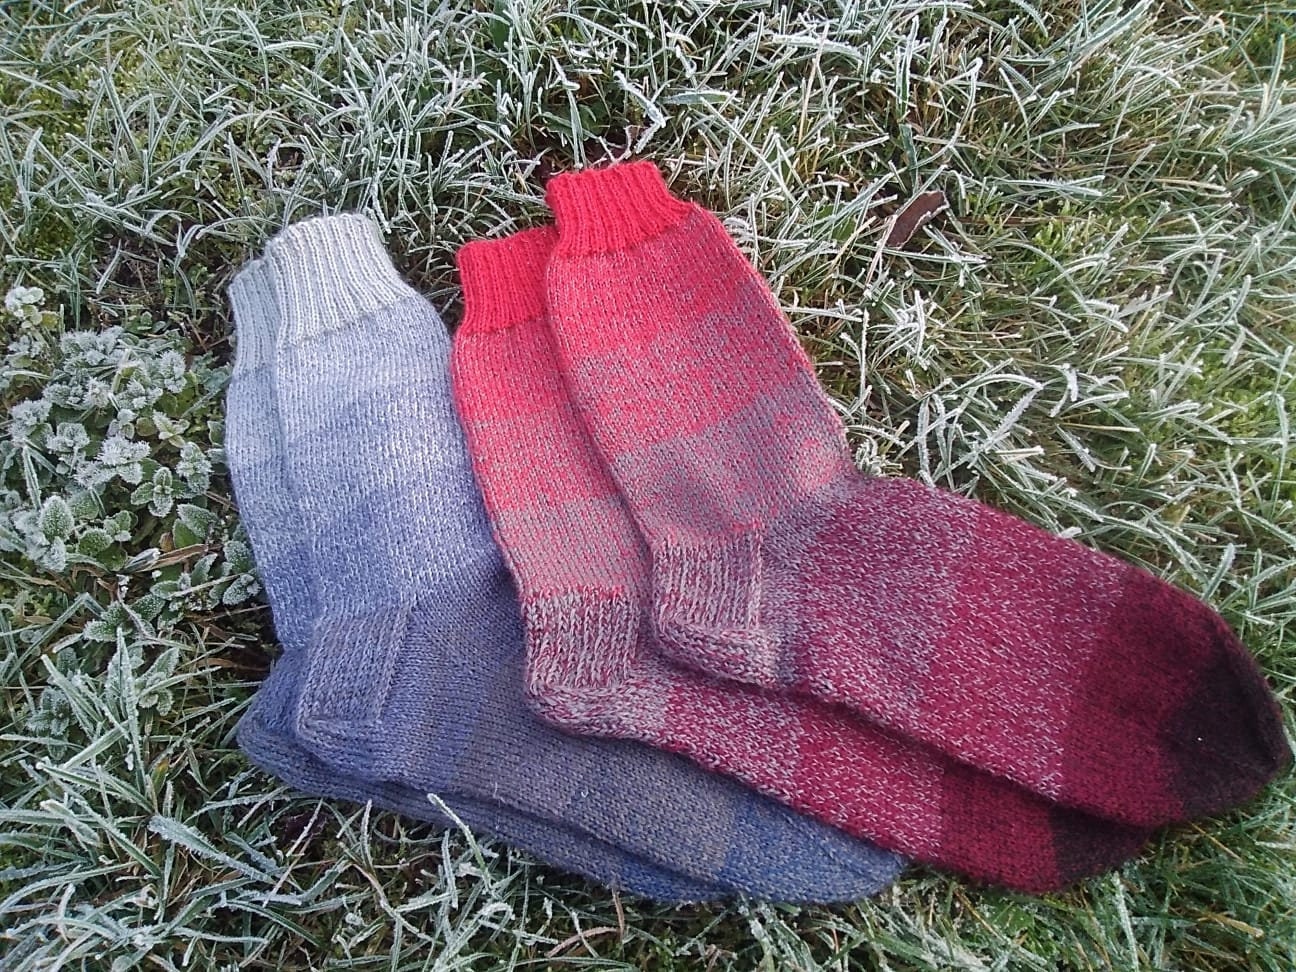 Wool socks Warm hand knitted socks Gift for him Unisex